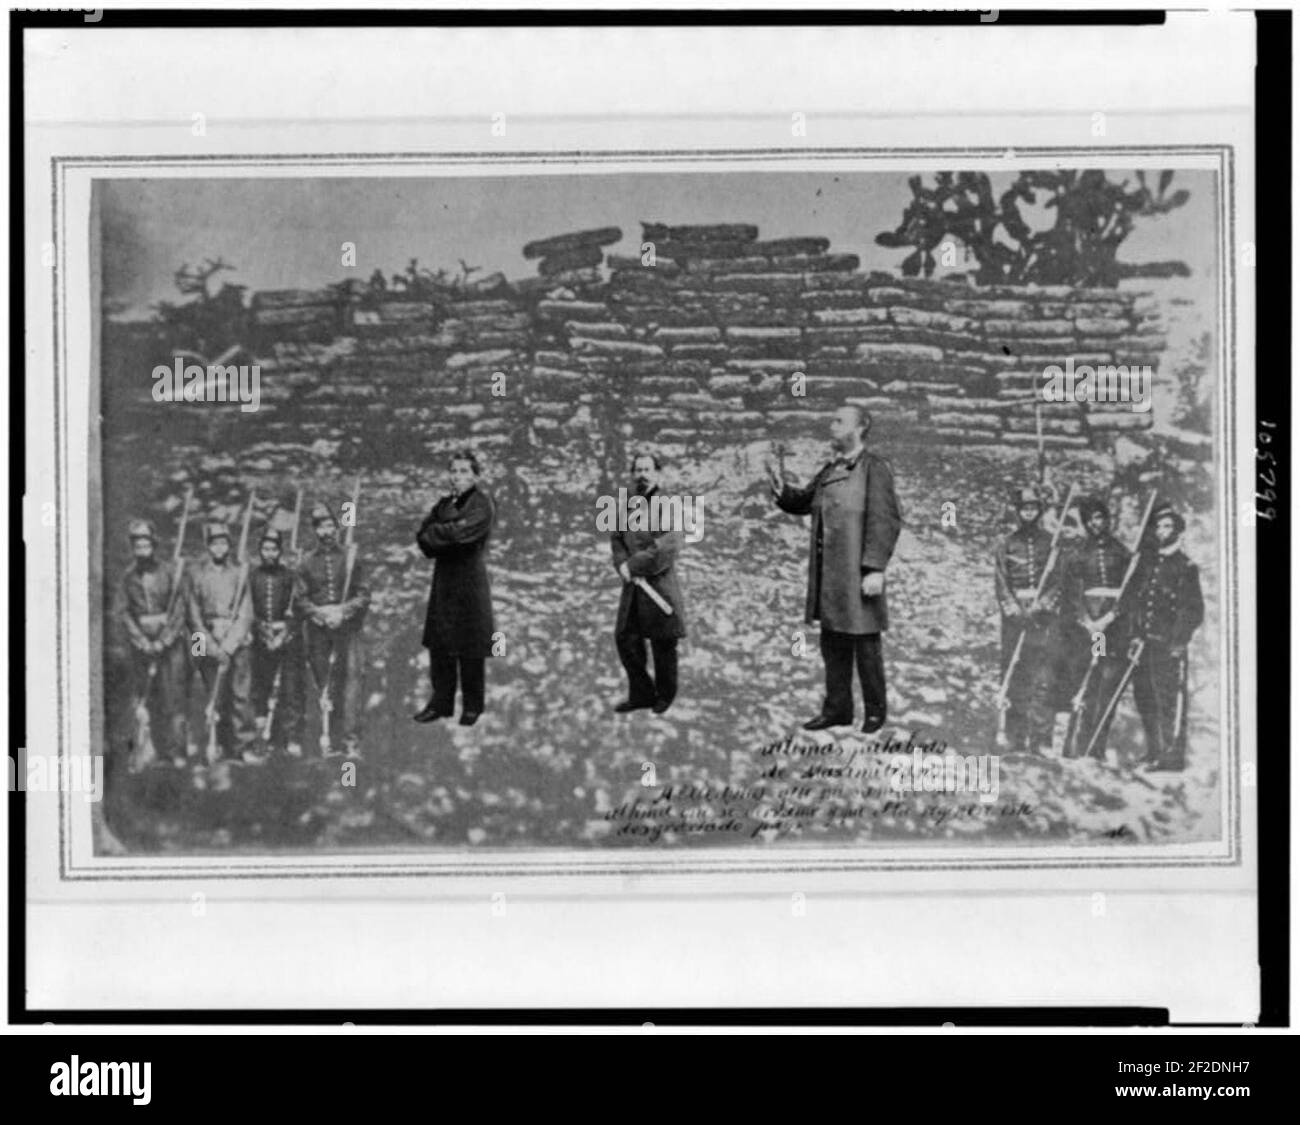 Portraits de l'empereur Maximilian du Mexique, Tomás Mejía, Miguel Miramón et de l'équipe de tir, superposés sur la photographie de leur lieu d'exécution, à Querétaro Banque D'Images